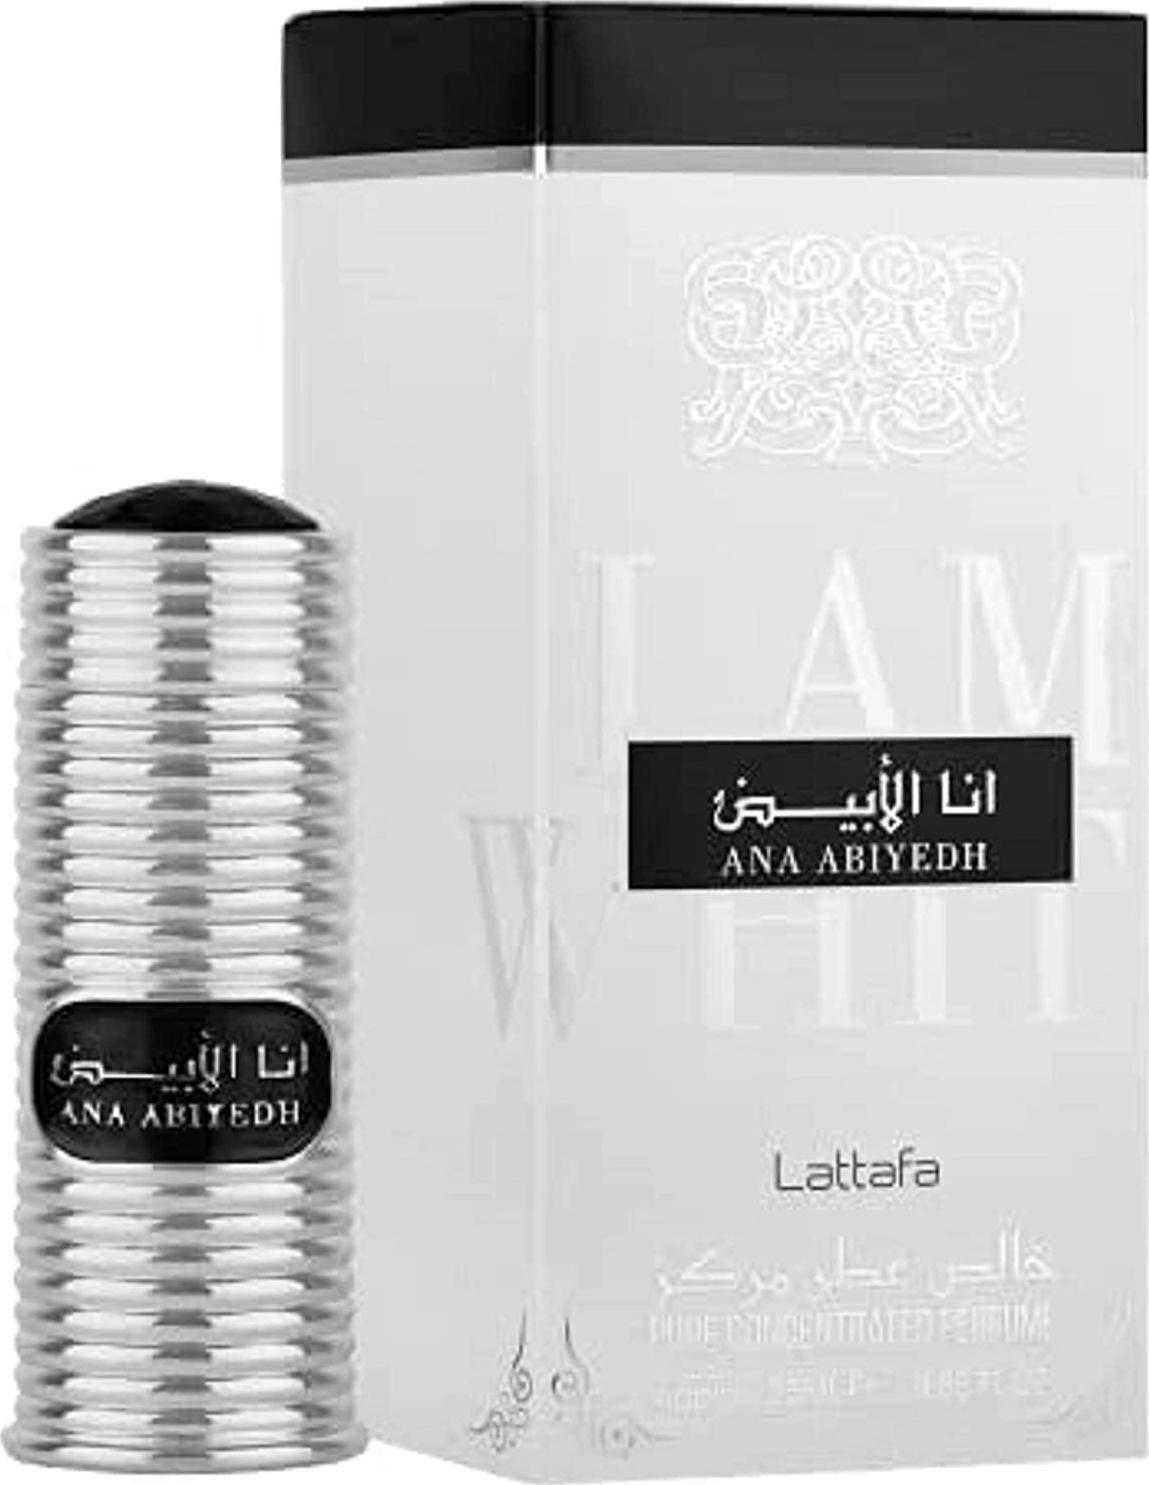 Ana Abiyedh Attar (25ml) fragrance oil by Lattafa | Khan El Khalili